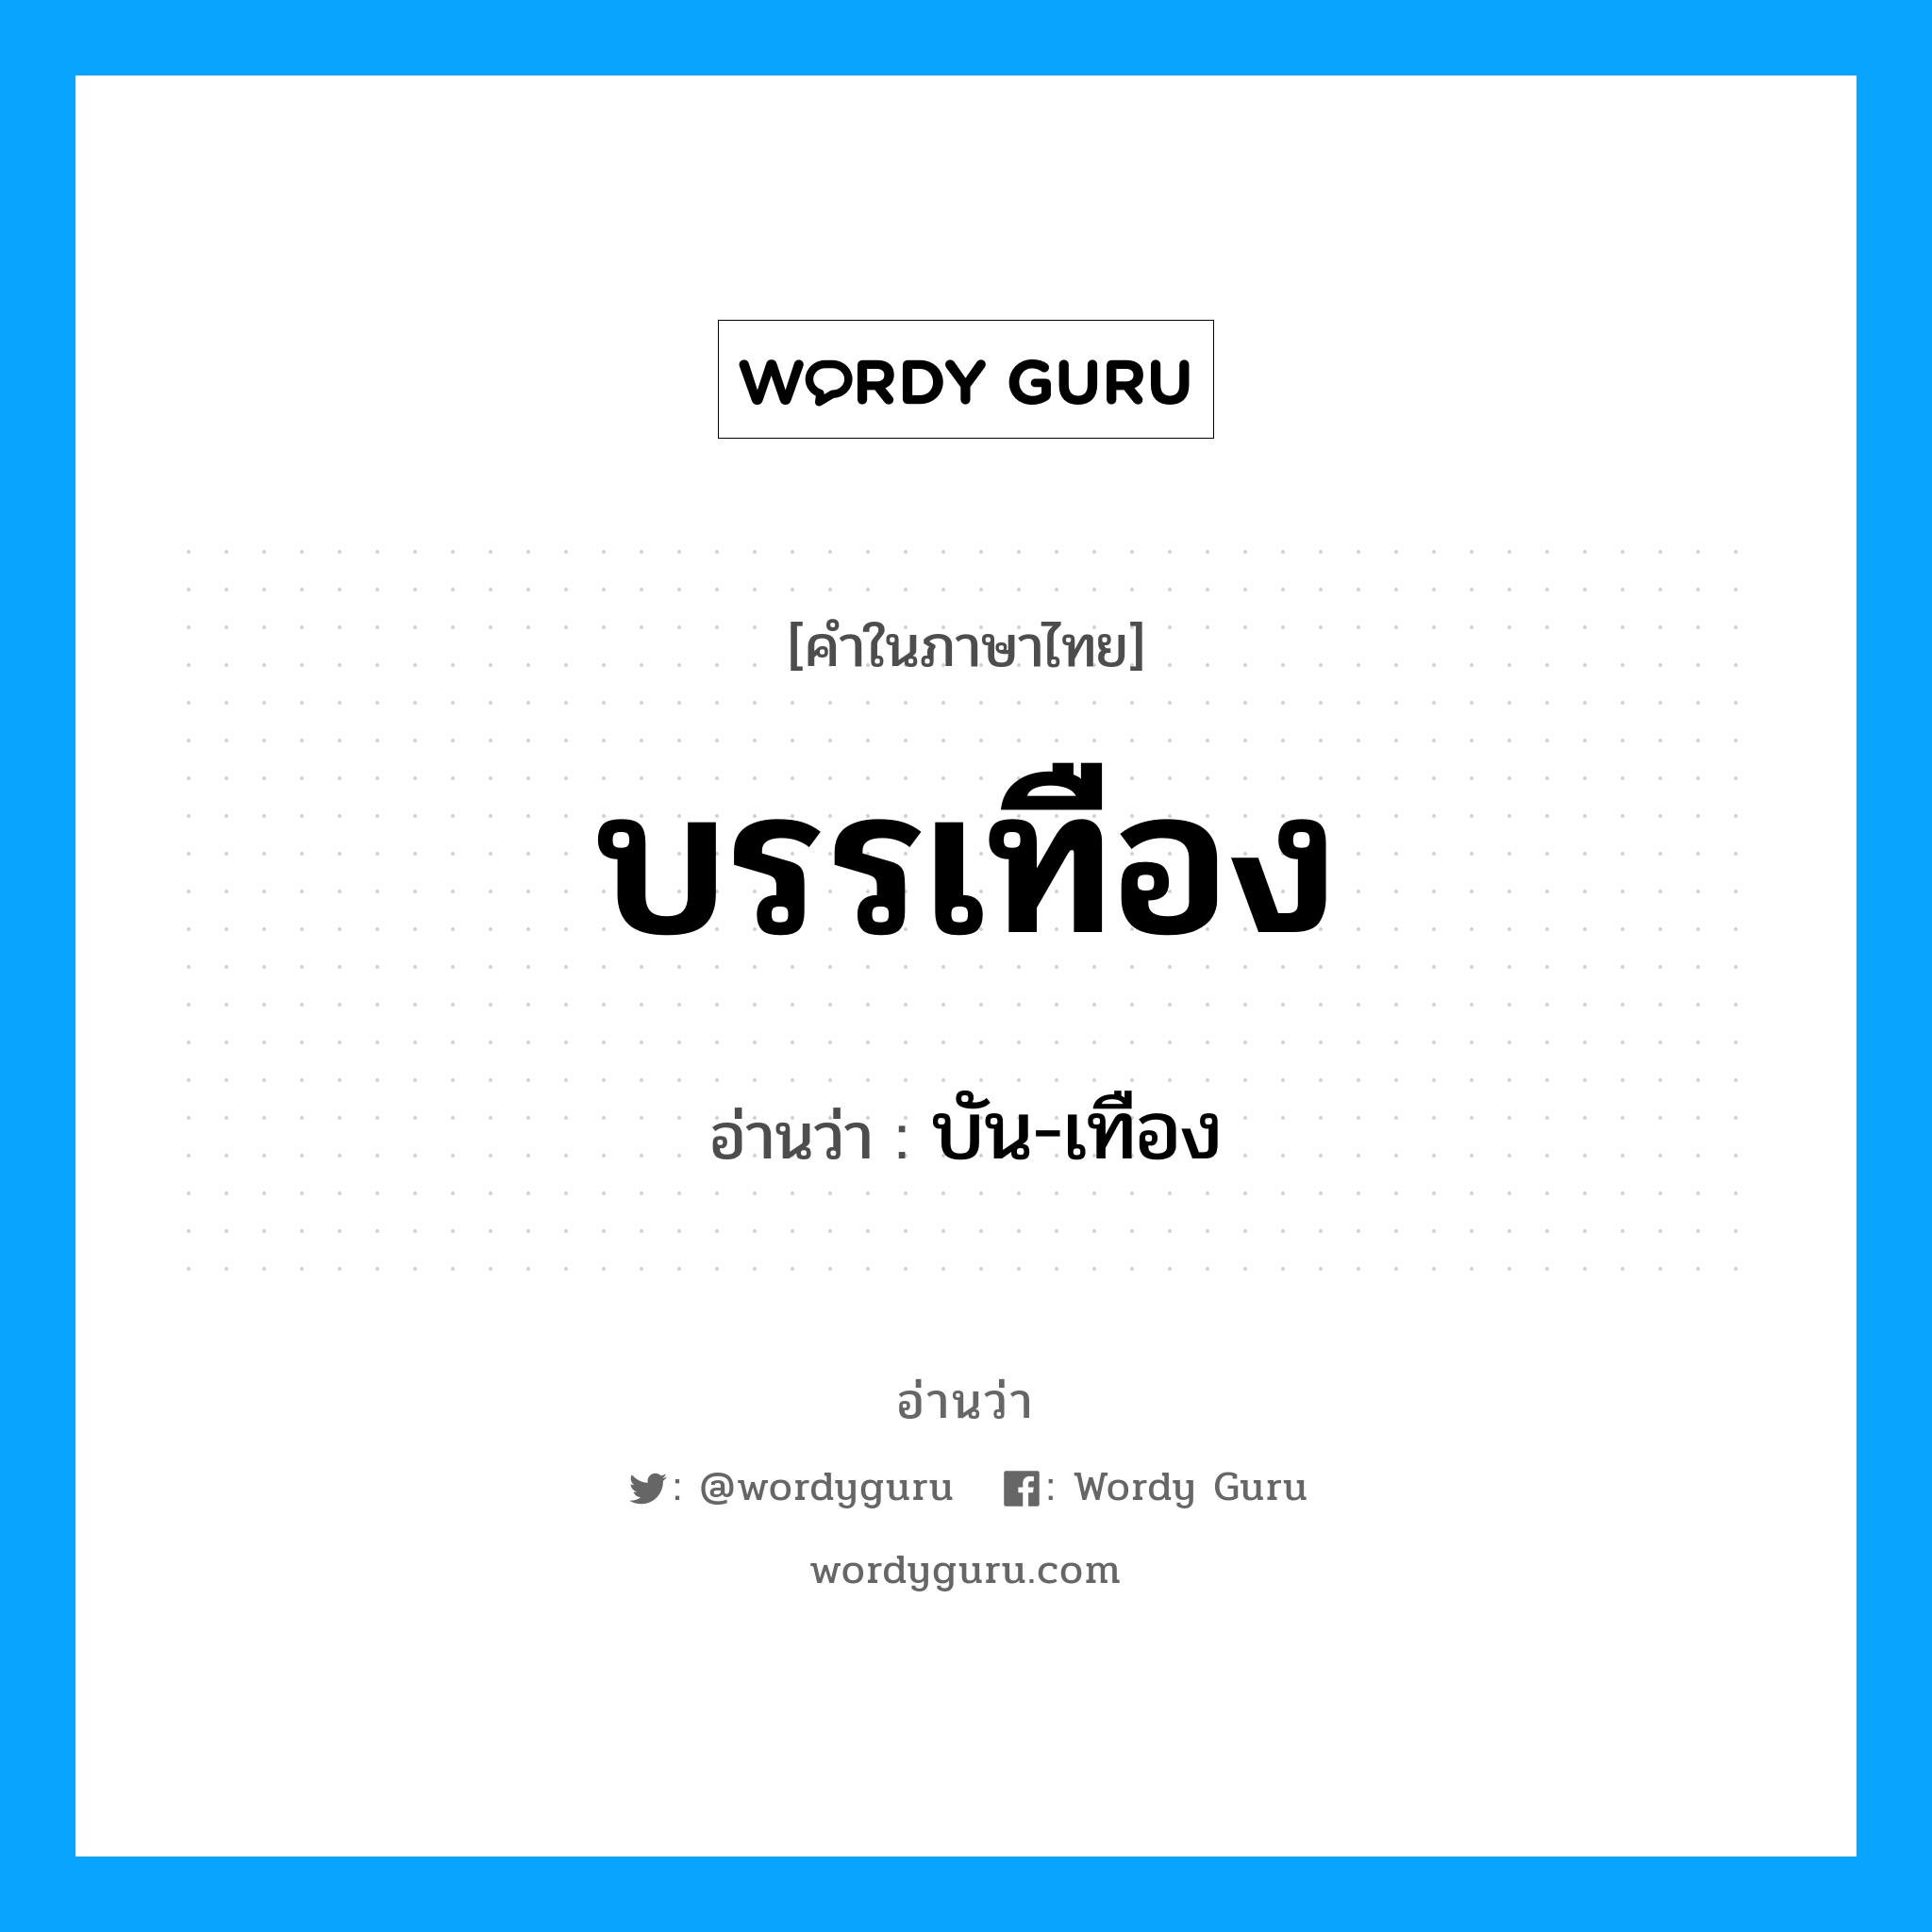 บัน-เทือง เป็นคำอ่านของคำไหน?, คำในภาษาไทย บัน-เทือง อ่านว่า บรรเทือง